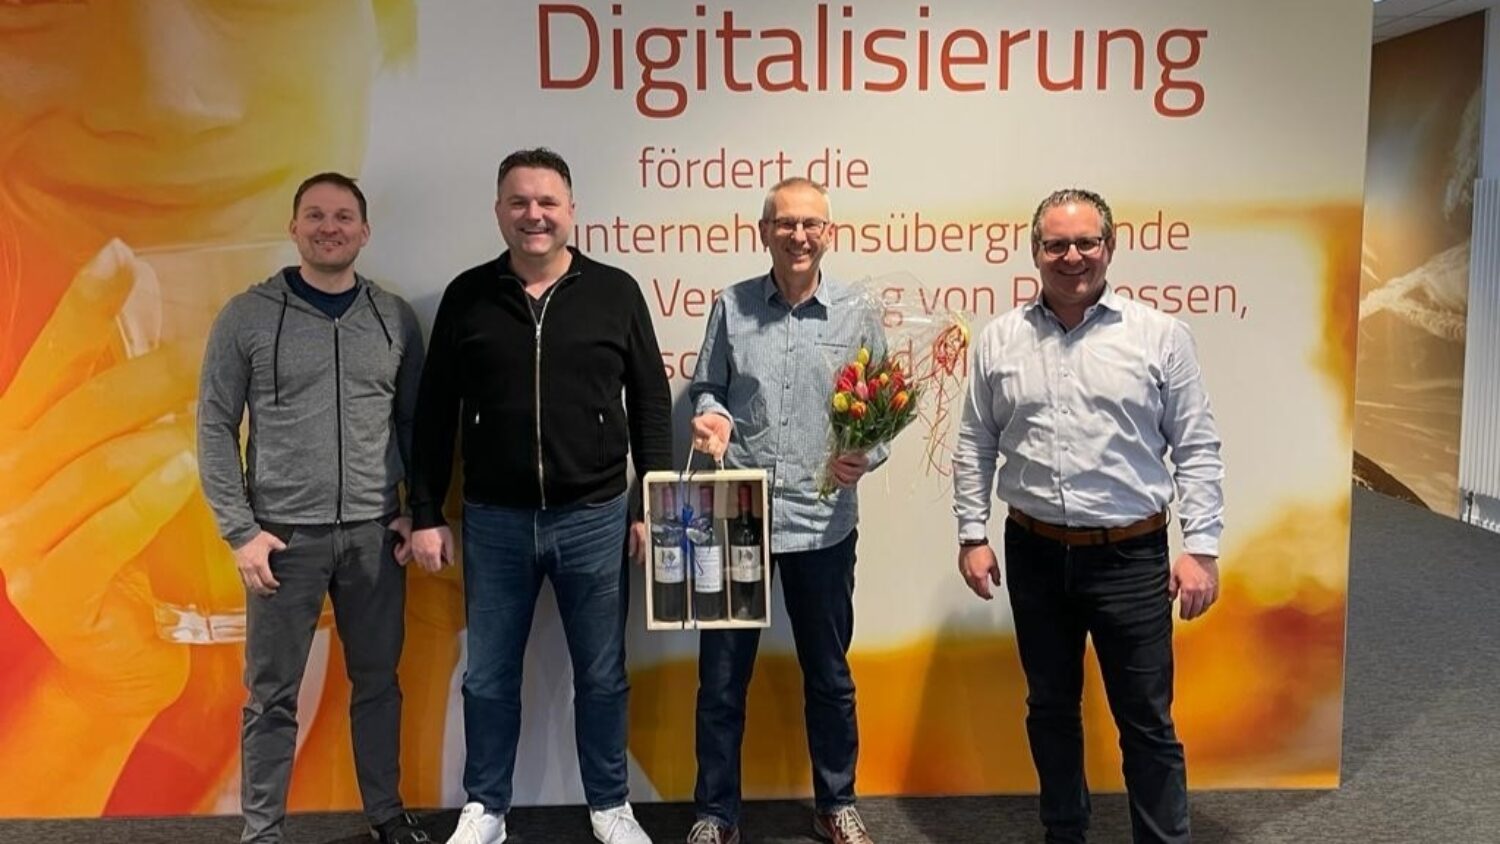 Autexis ist Finalist für den Aargauer Unternehmenspreis 2018